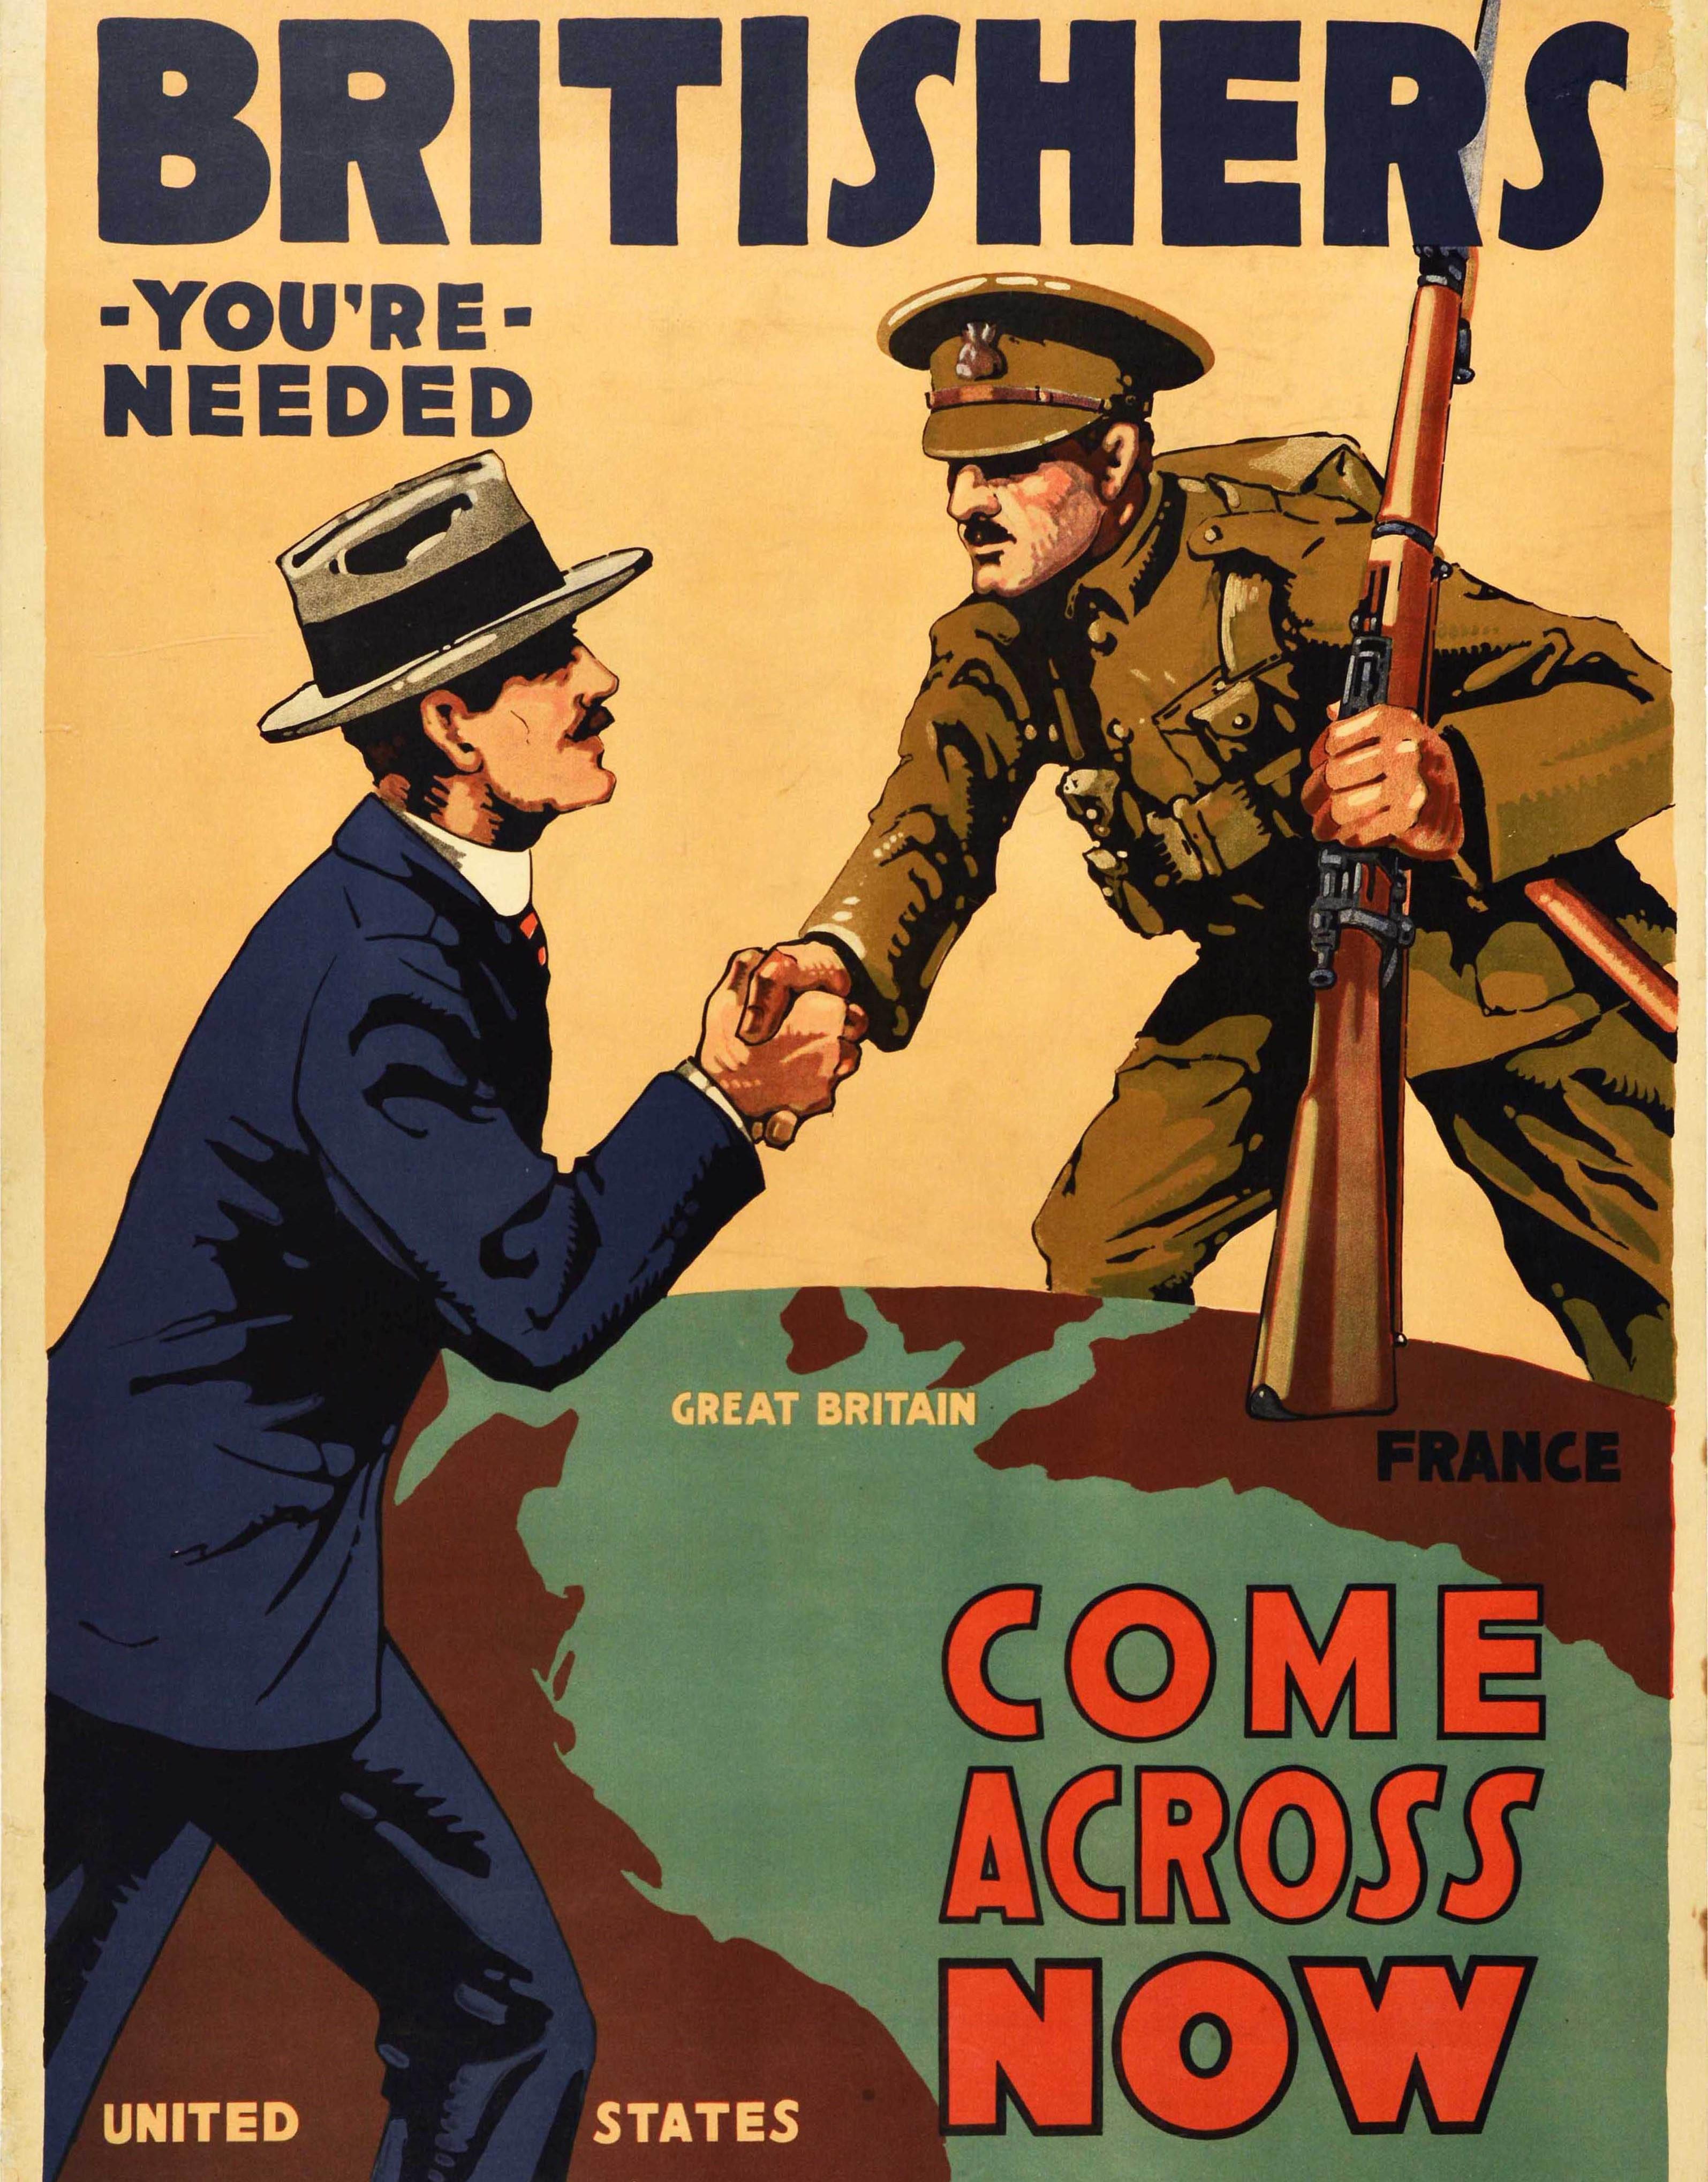 Originales antikes Rekrutierungsplakat für den Ersten Weltkrieg - Britishers You're Needed Come Across Now - mit einem Bild auf einer Weltkarte, das einen Soldaten mit einem Gewehr in Europa (Großbritannien/Frankreich) zeigt, der die Hand über den